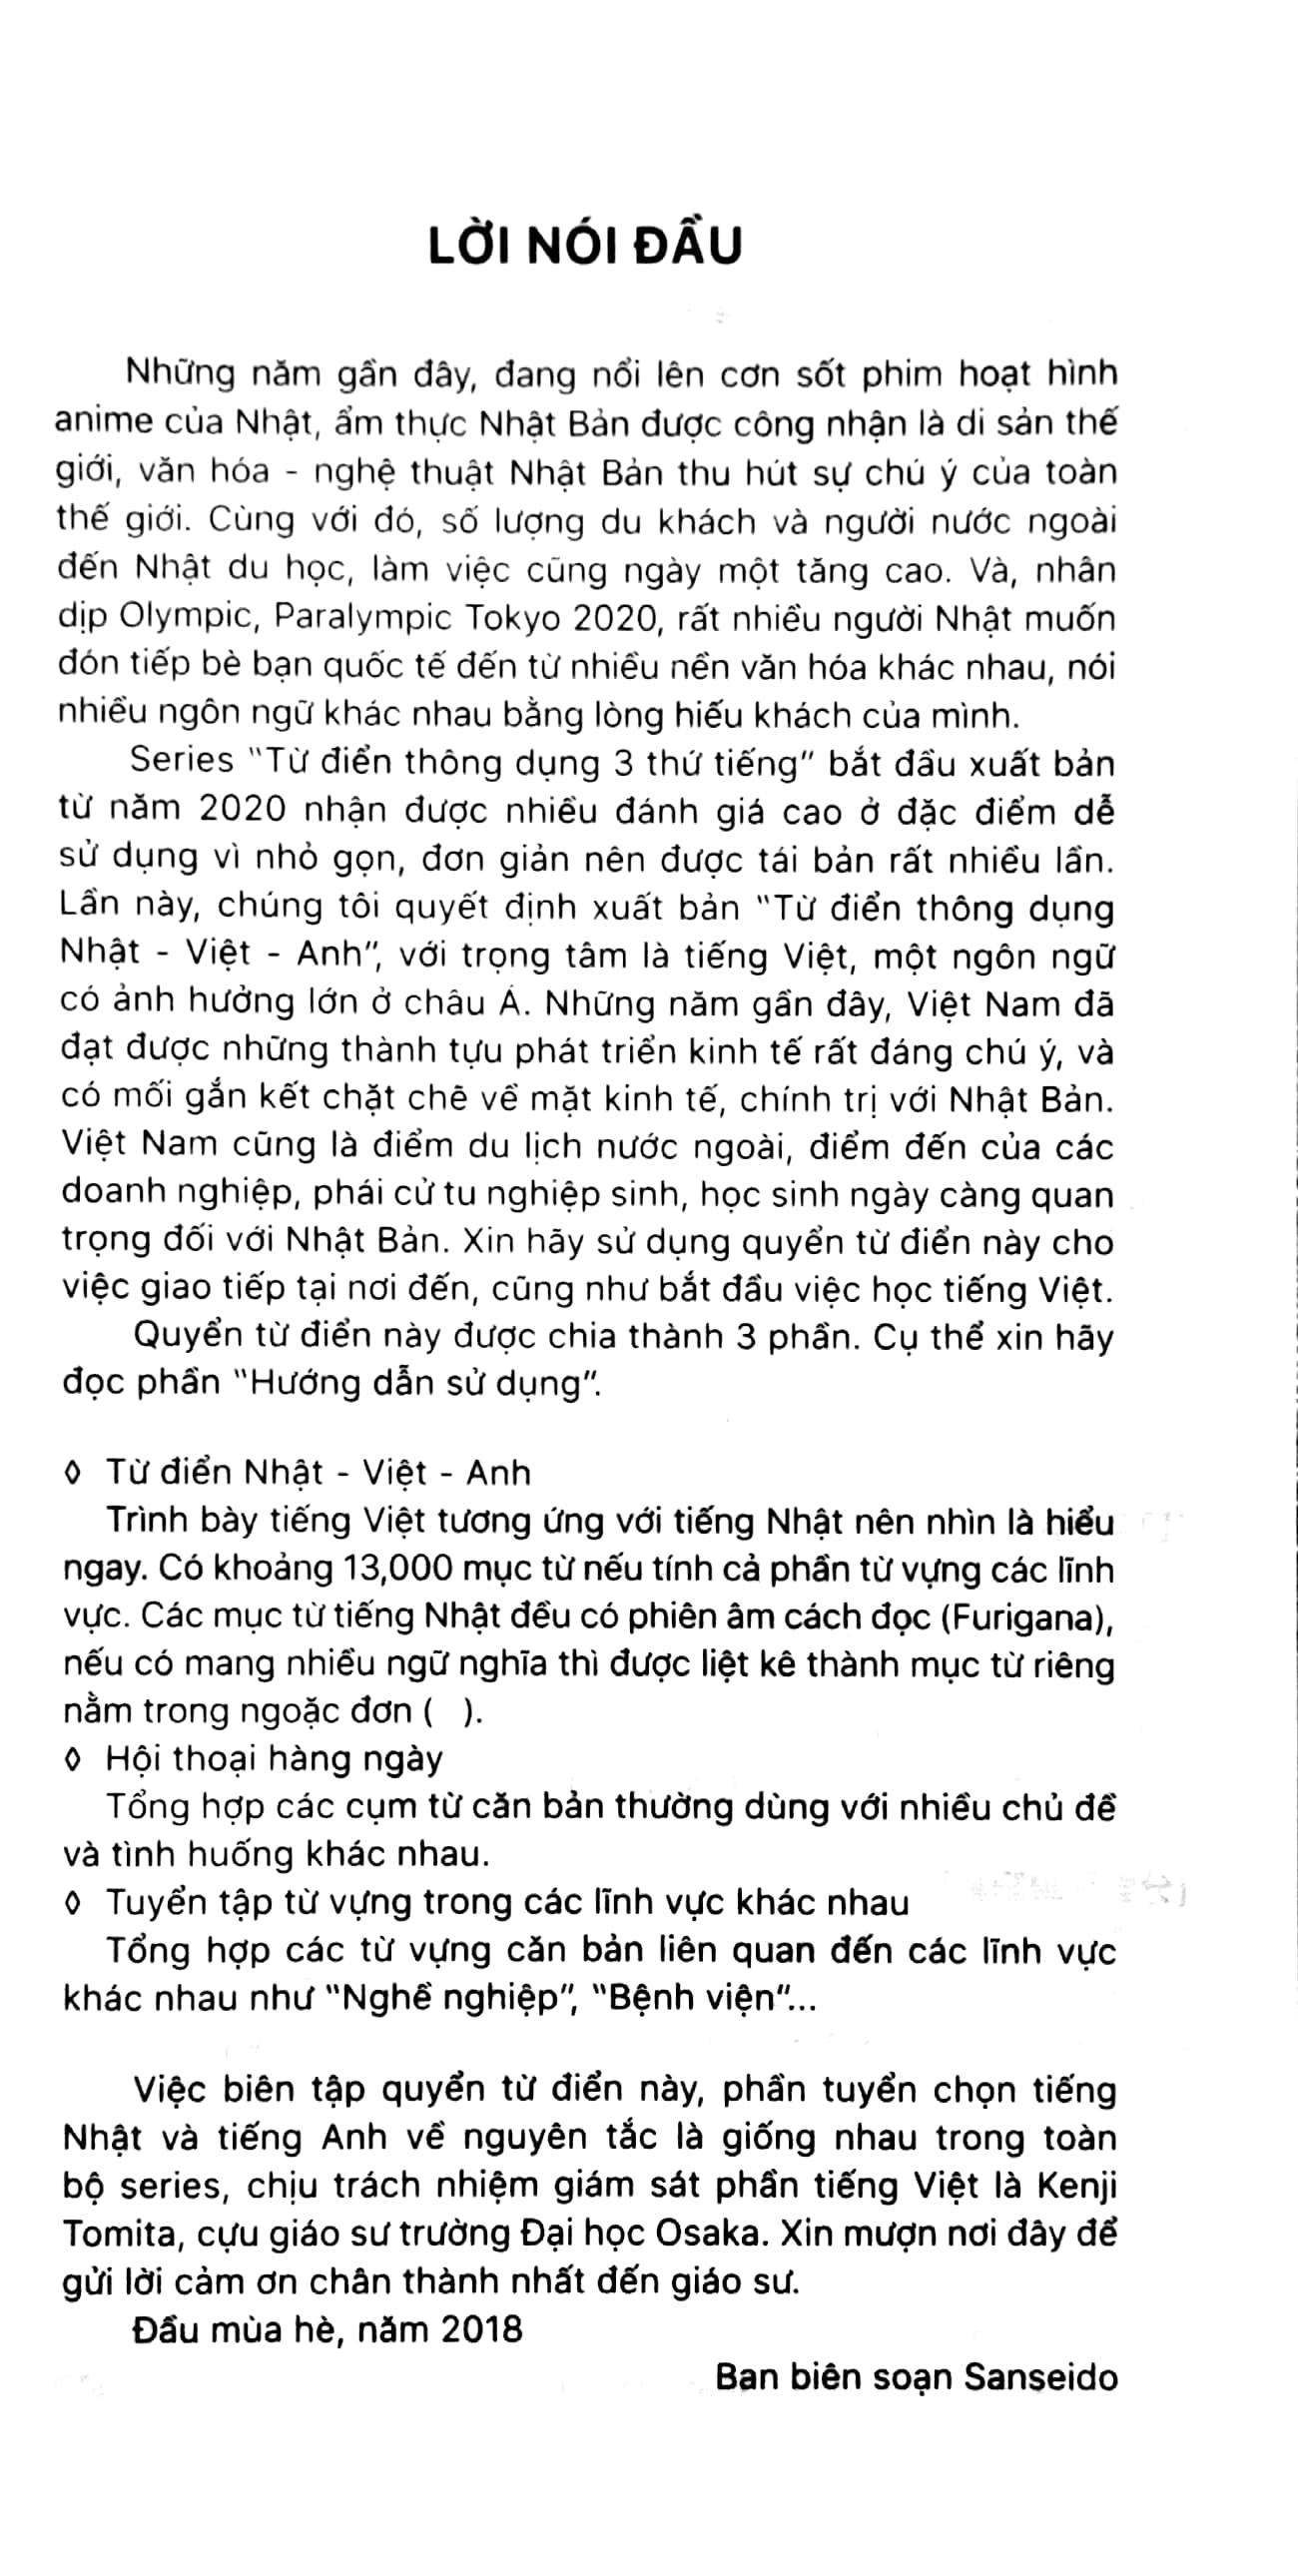 Từ Điển Thông Dụng Nhật - Việt - Anh Daily Japanese - Vietnamese - English Dictionary PDF